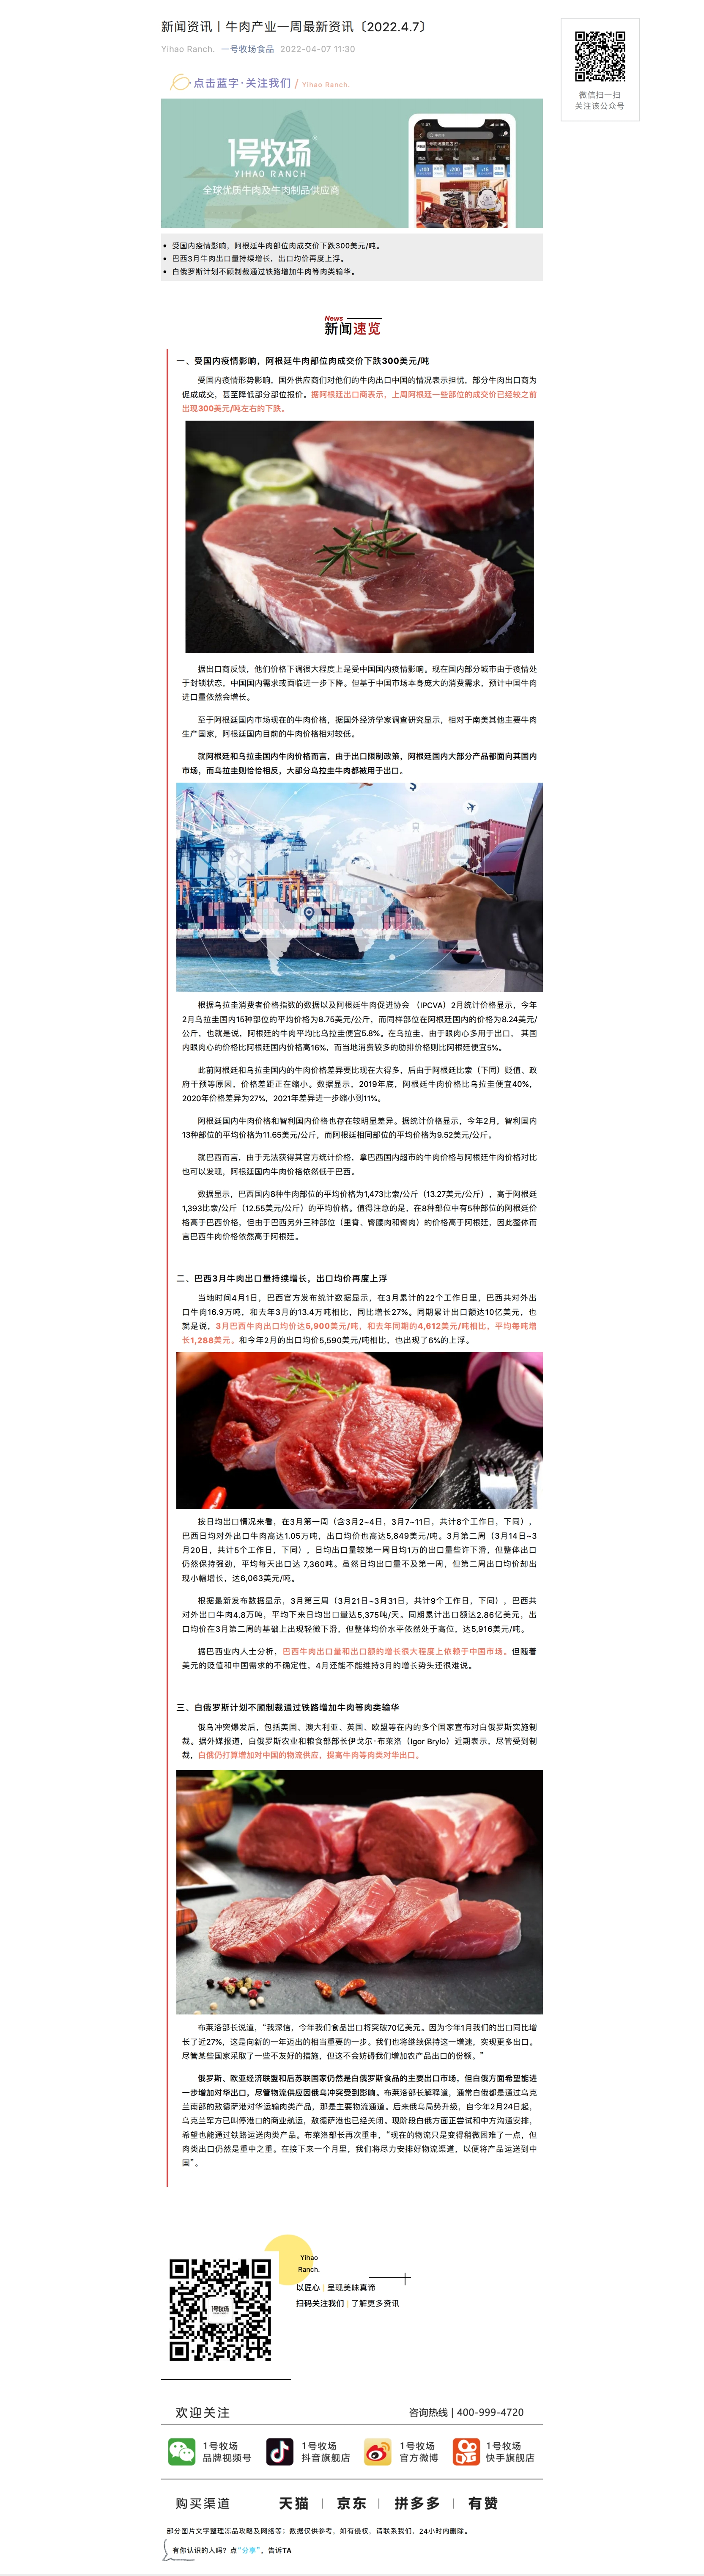 新闻资讯丨牛肉产业一周最新资讯〔2022.4.7〕_page_1.png